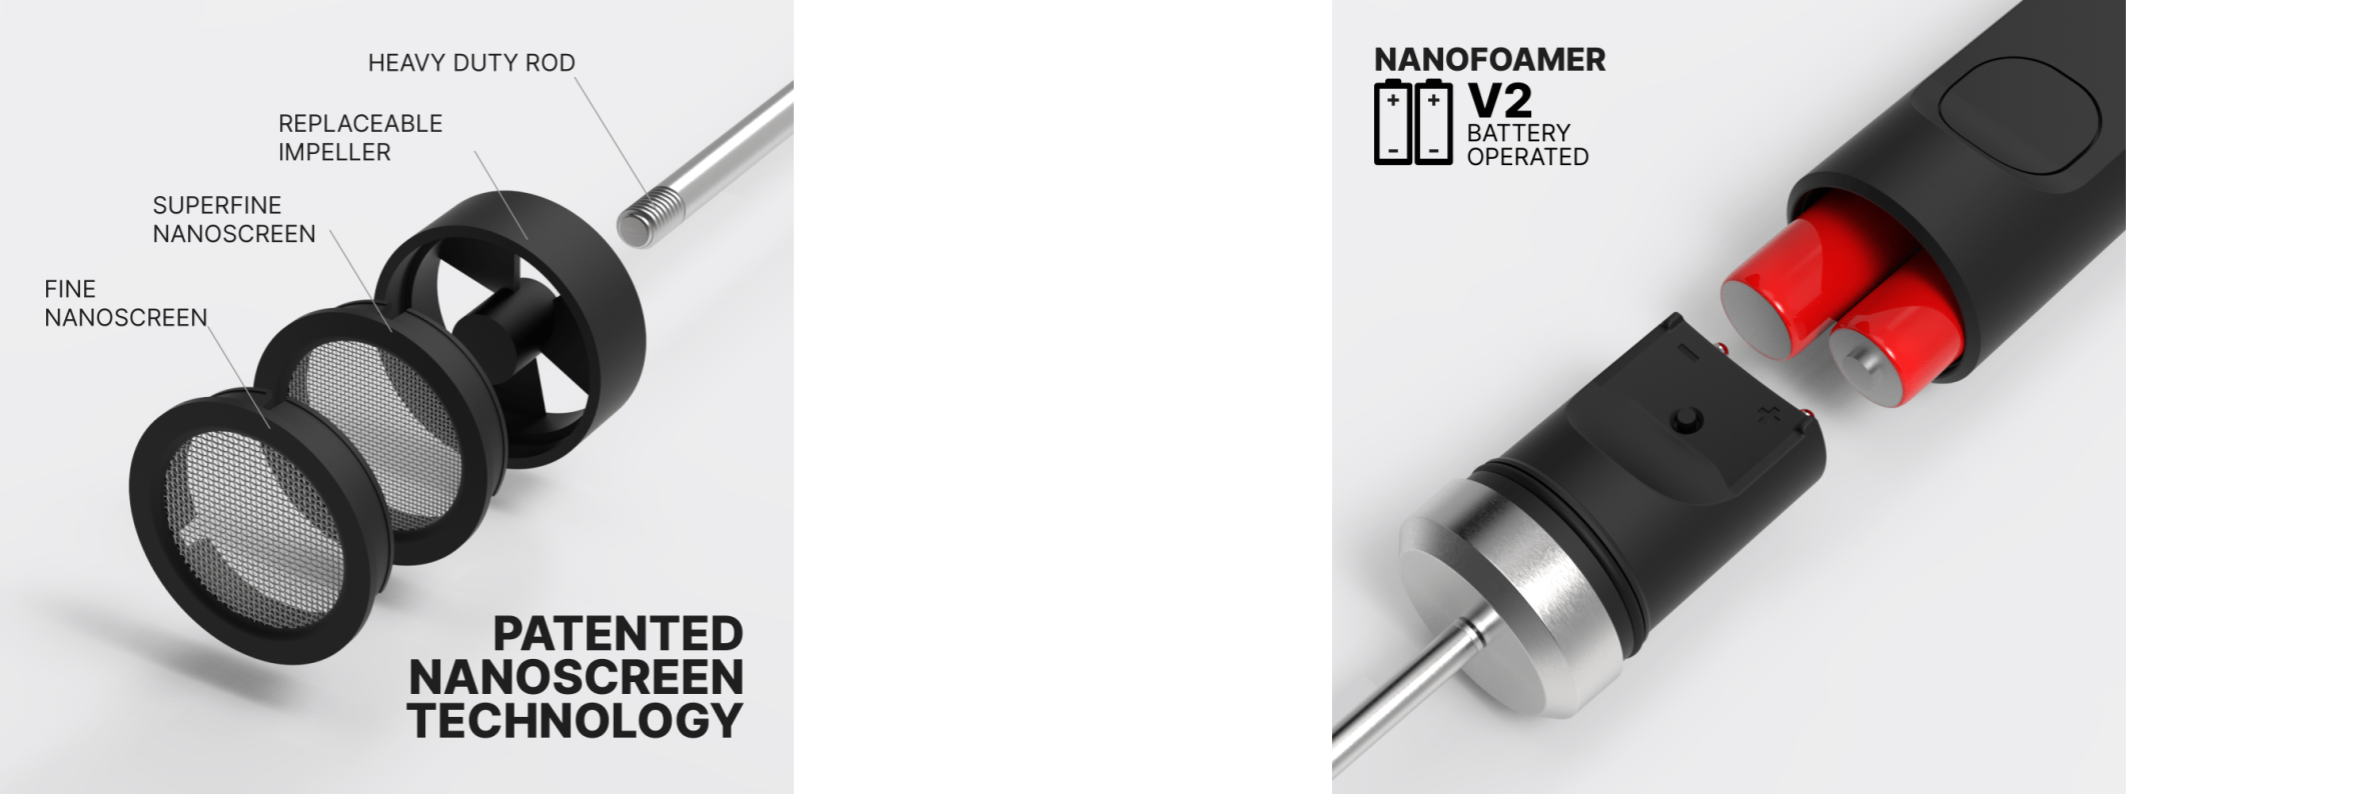 Nanofoamer V2